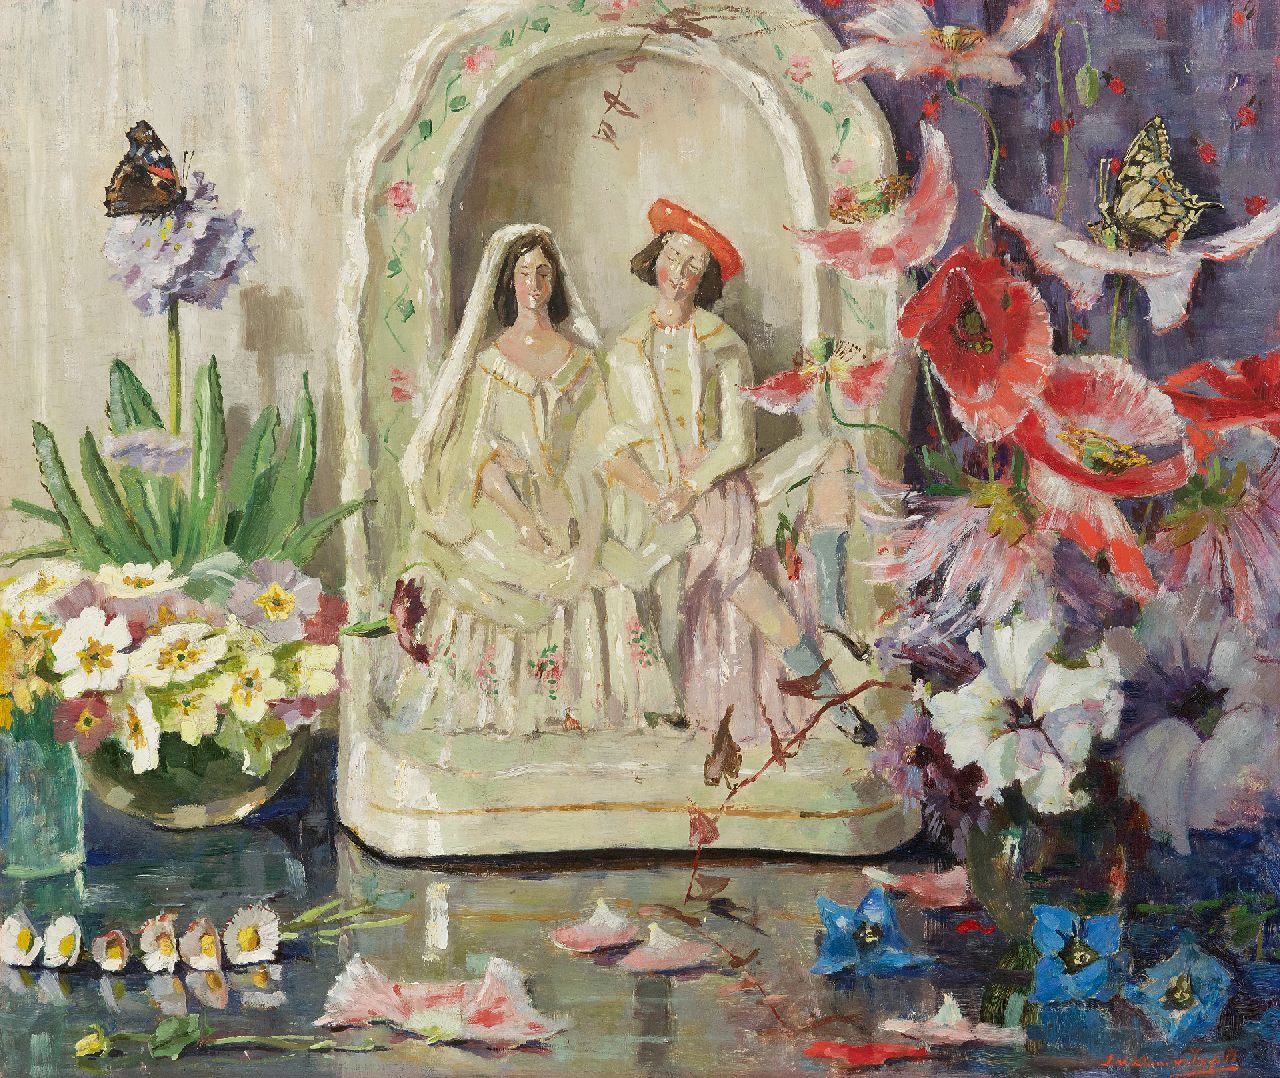 Lucie van Dam van Isselt | Stilleven met bloemen, vlinders en porseleinen huwelijksbeeldje, olieverf op paneel, 45,2 x 53,2 cm, gesigneerd r.o.